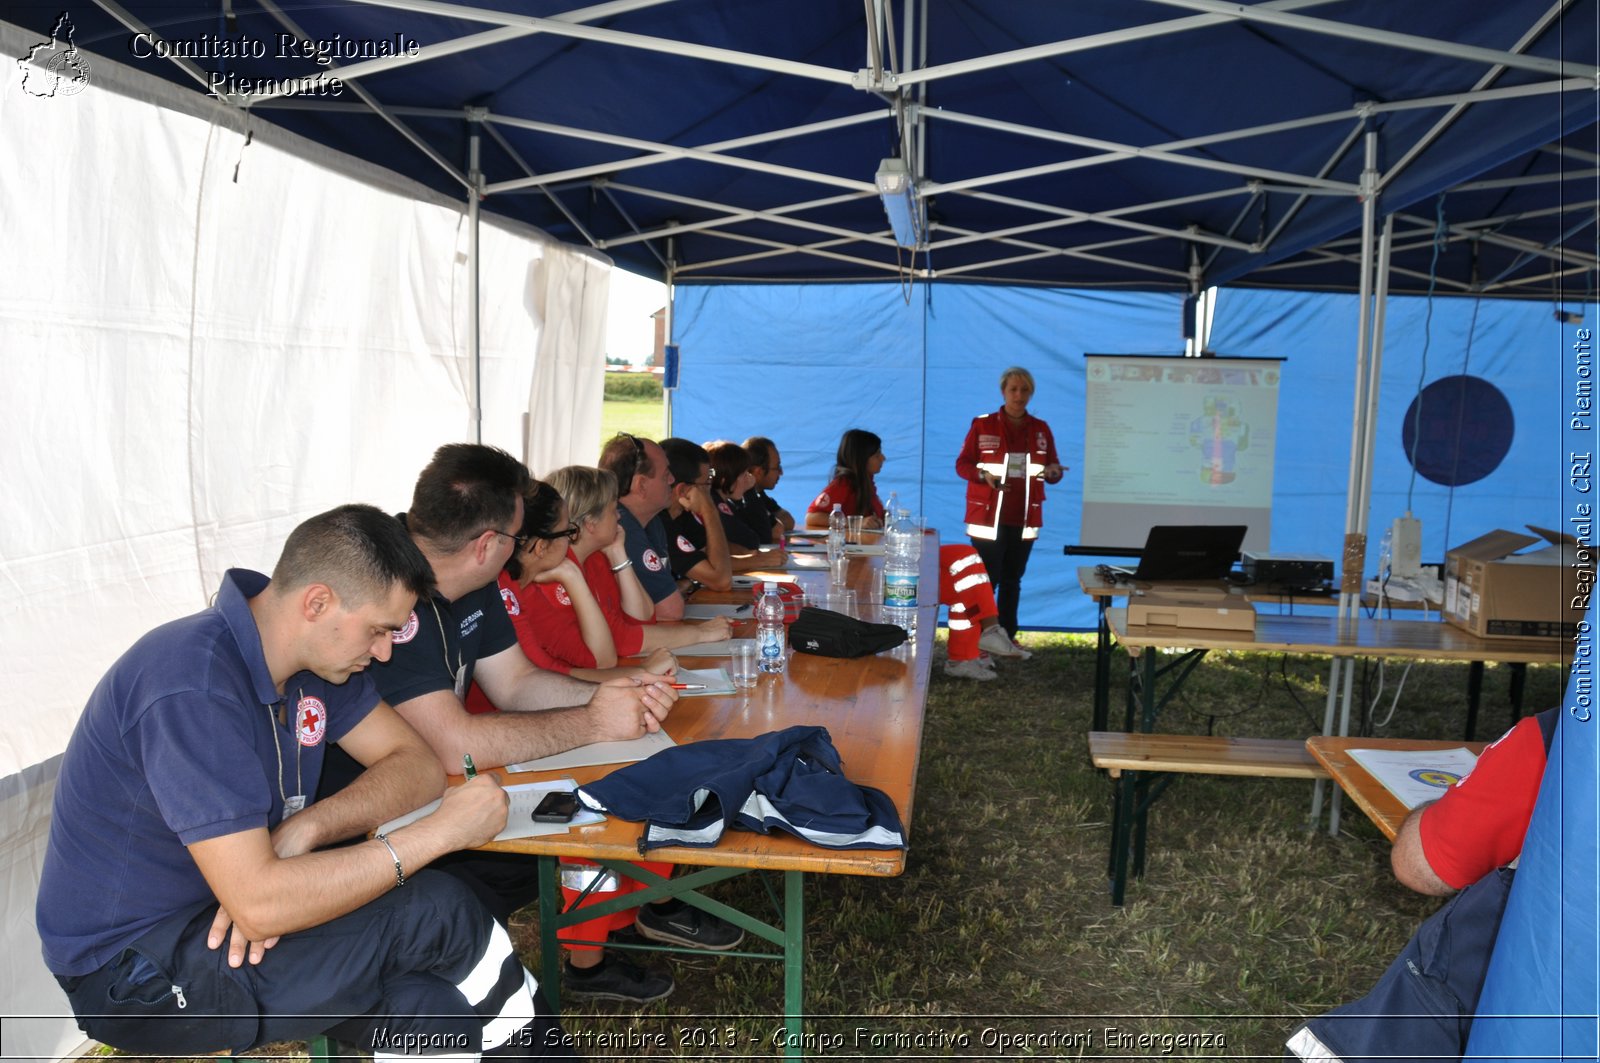 Mappano - 15 Settembre 2013 - Campo Formativo Operatori Emergenza - Croce Rossa Italiana - Comitato Regionale del Piemonte